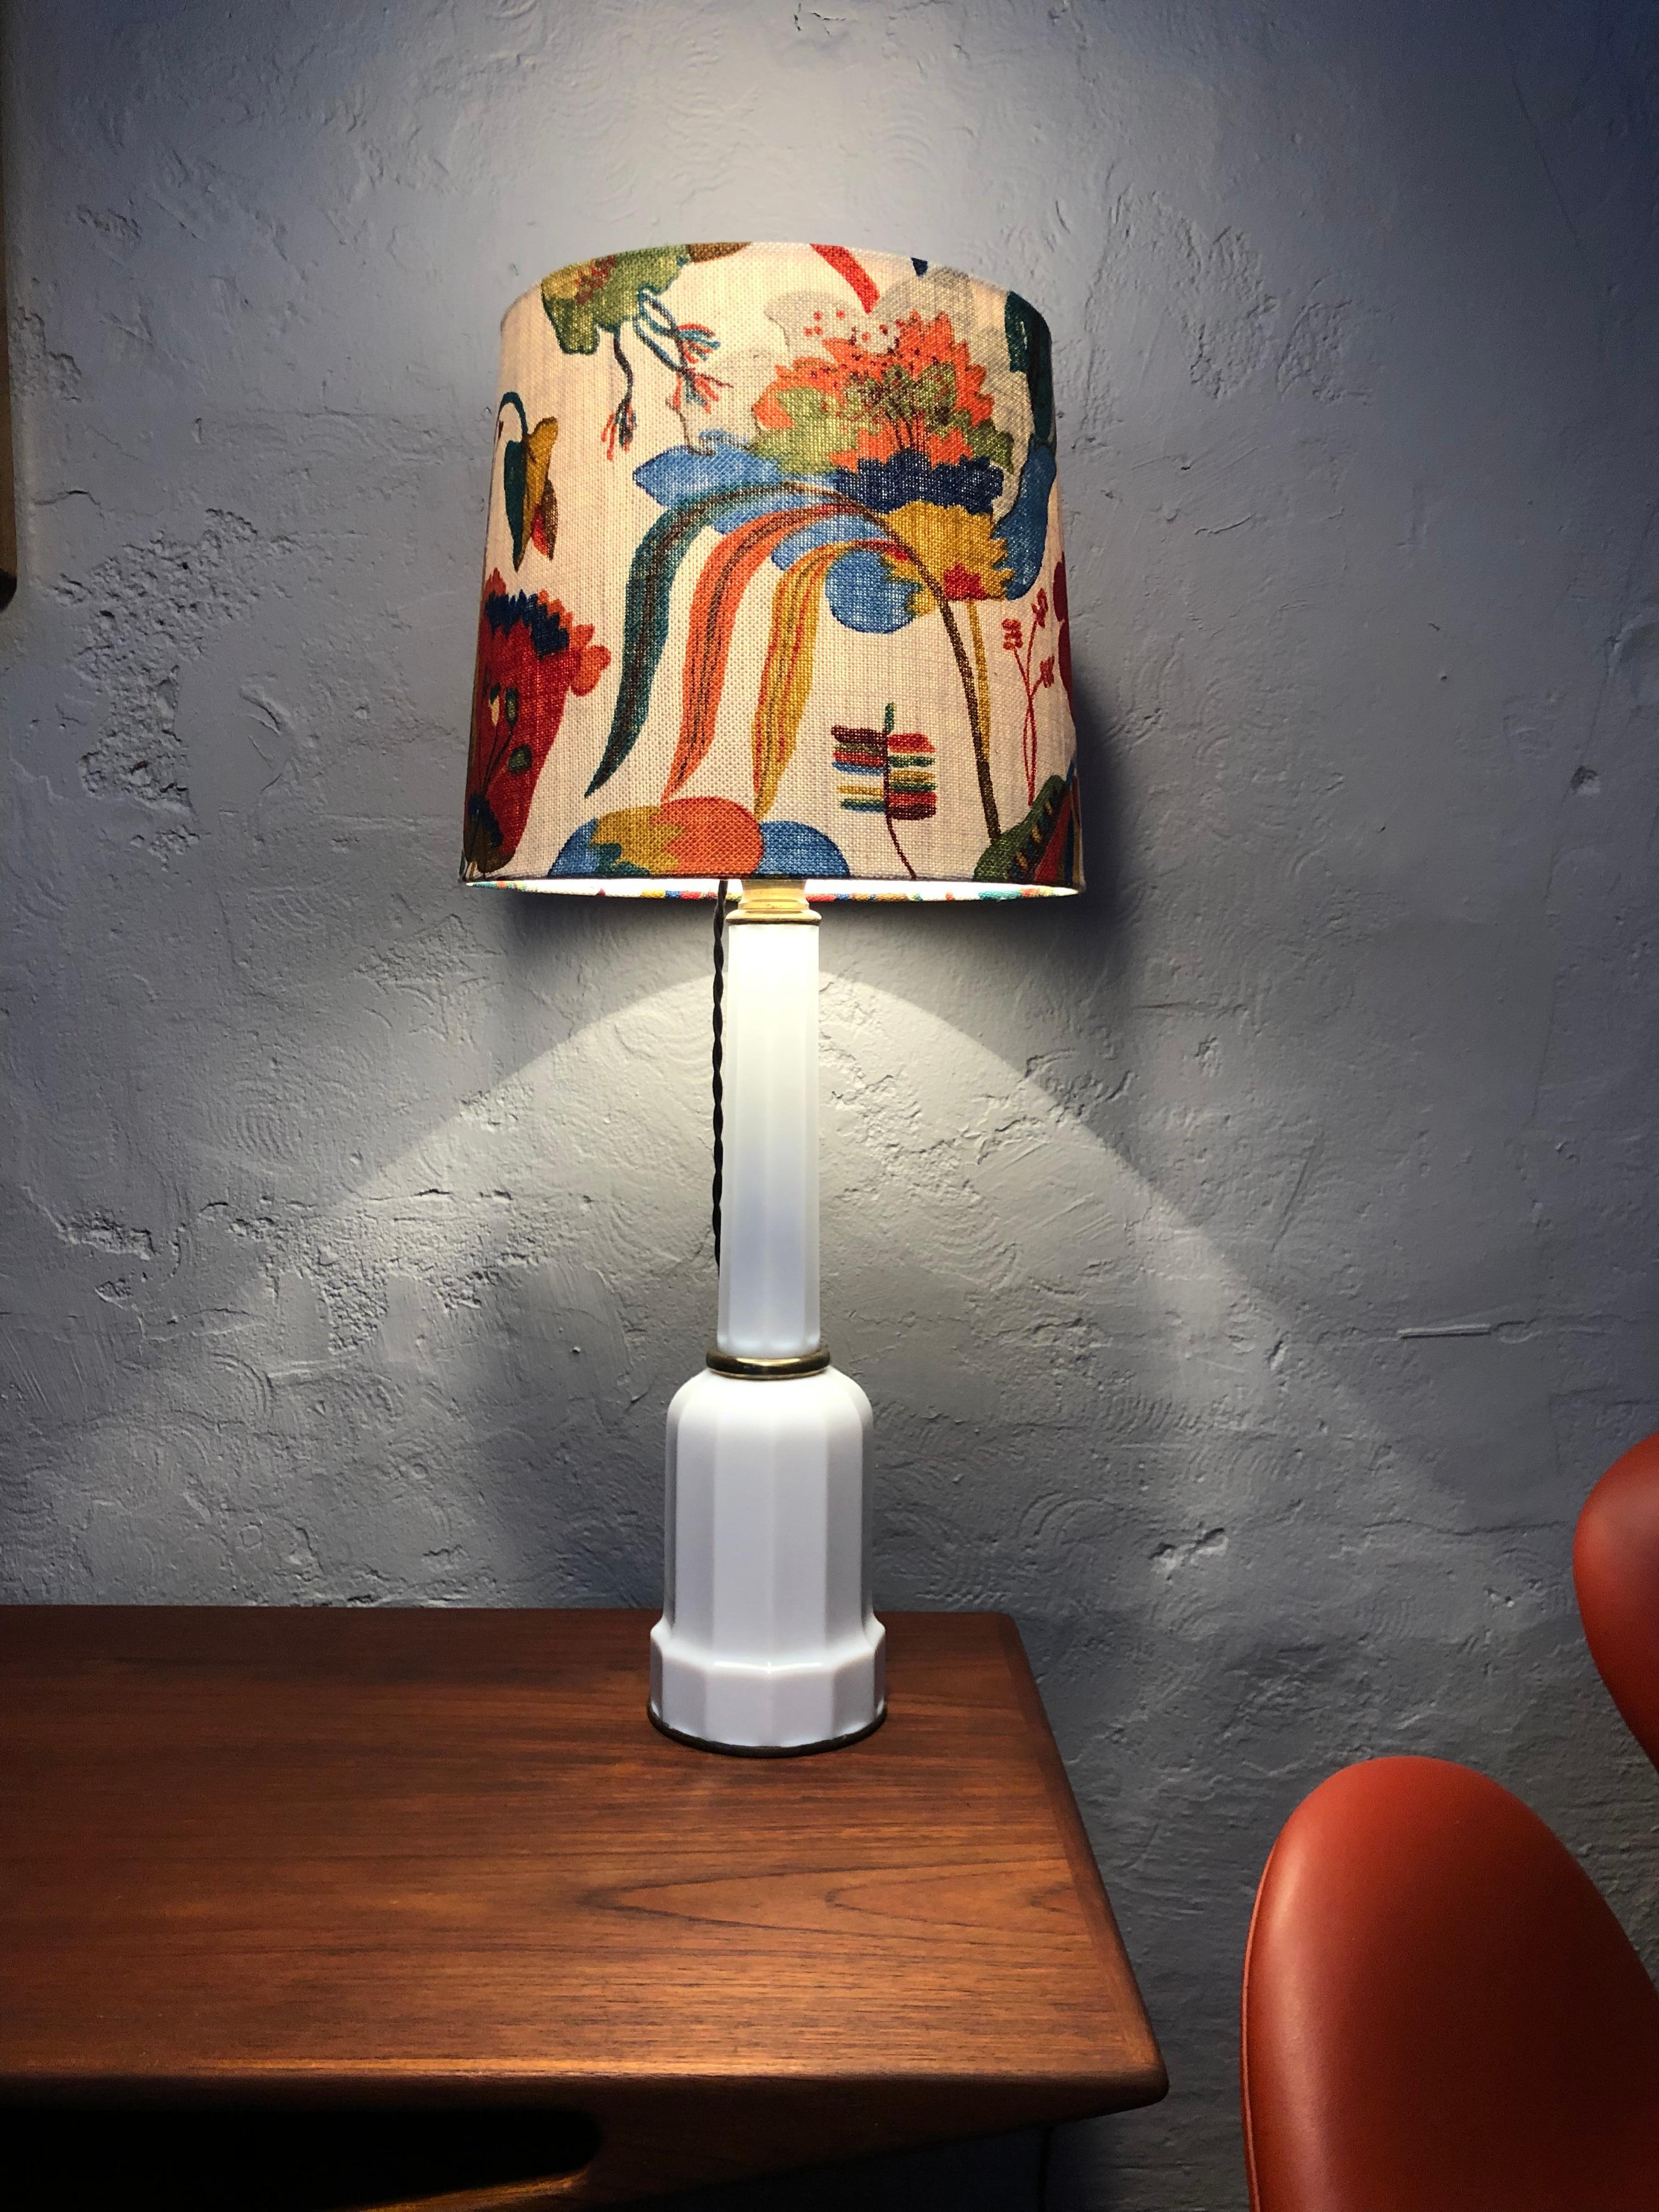 Große beeindruckend schöne antike Heiberg-Öl-Tischlampe aus den 1800er Jahren in weißem Opalglas und mit Messingbeschlägen.
Anfang der 1900er Jahre auf Elektrizität umgestellt.
Lampenfassung aus Bakelit mit An/Aus-Schalter.
Neu verdrahtet mit